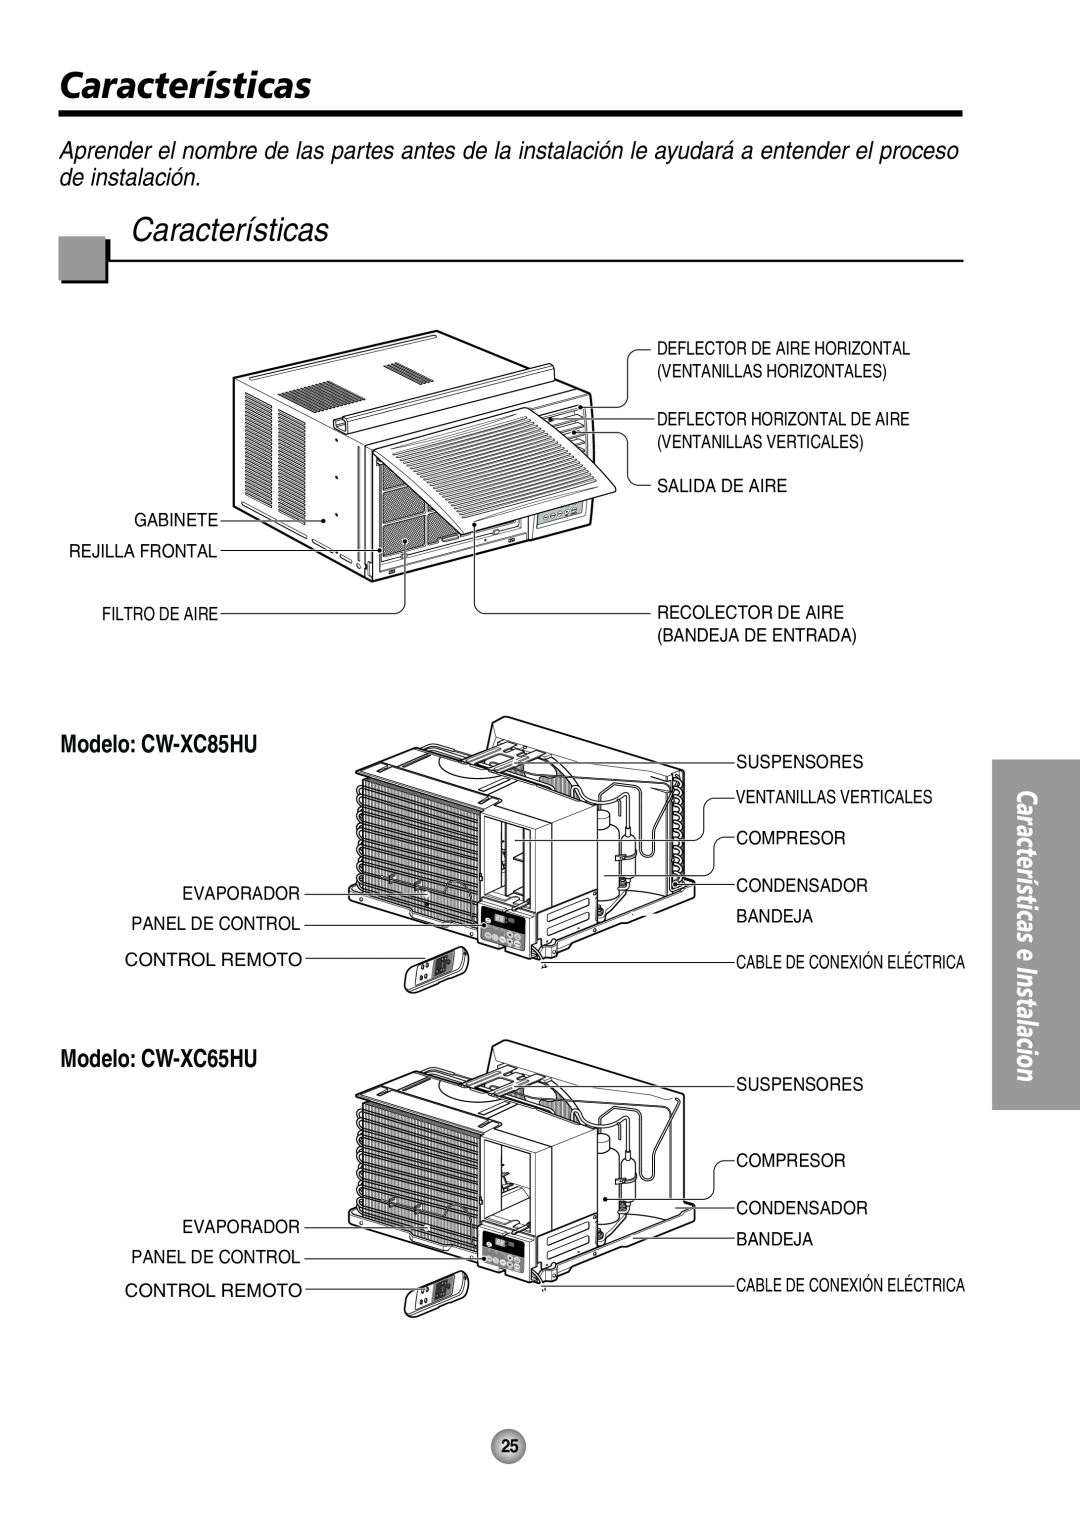 Panasonic manual Modelo CW-XC65HU, Características e Instalacion, Modelo CW-XC85HU, Evaporador 